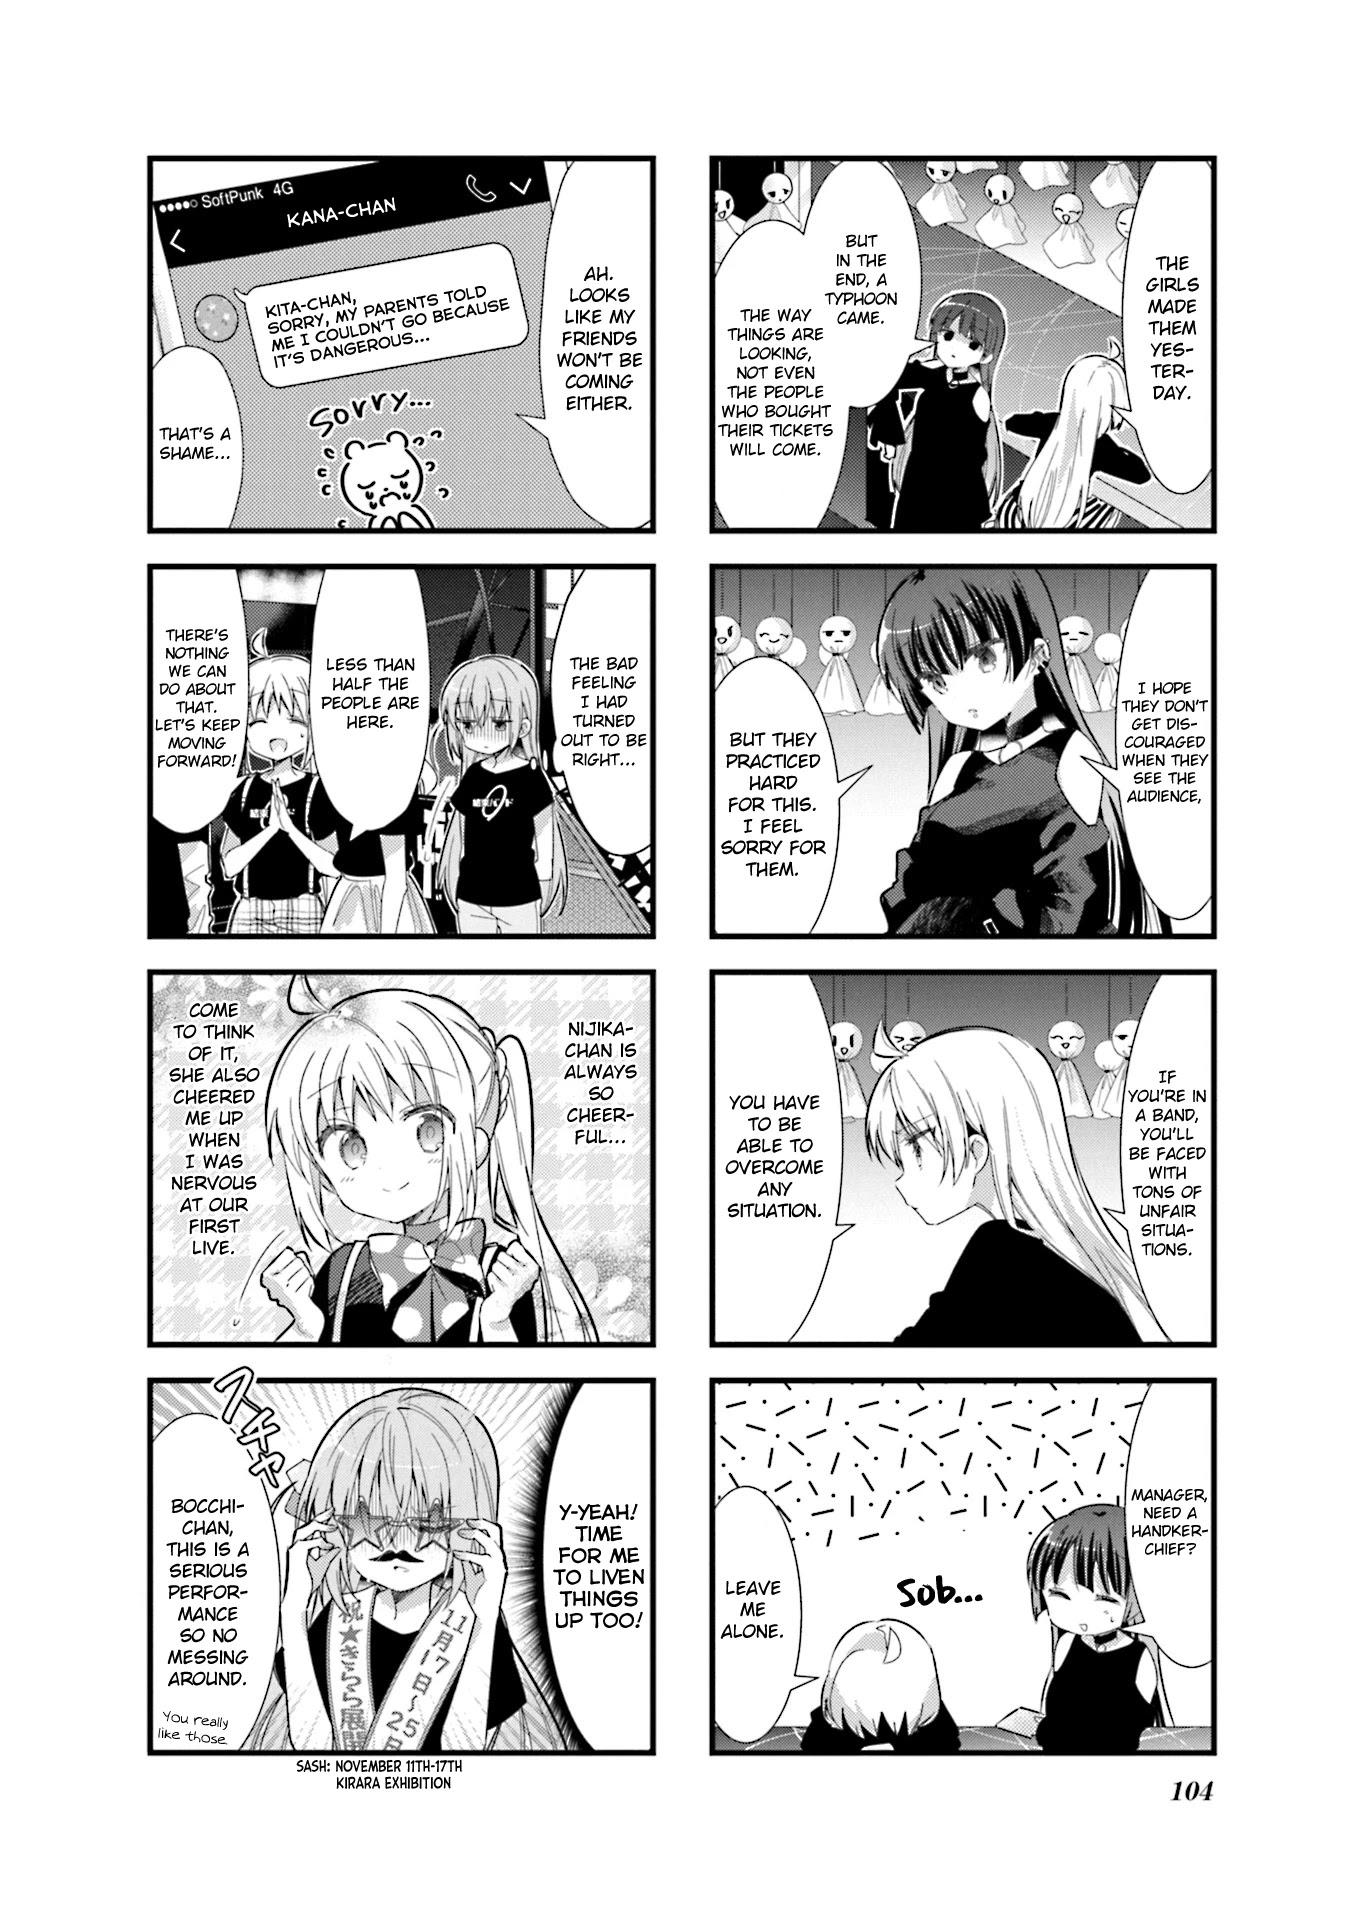 Cool Bocchi manga panels : r/BocchiTheRock